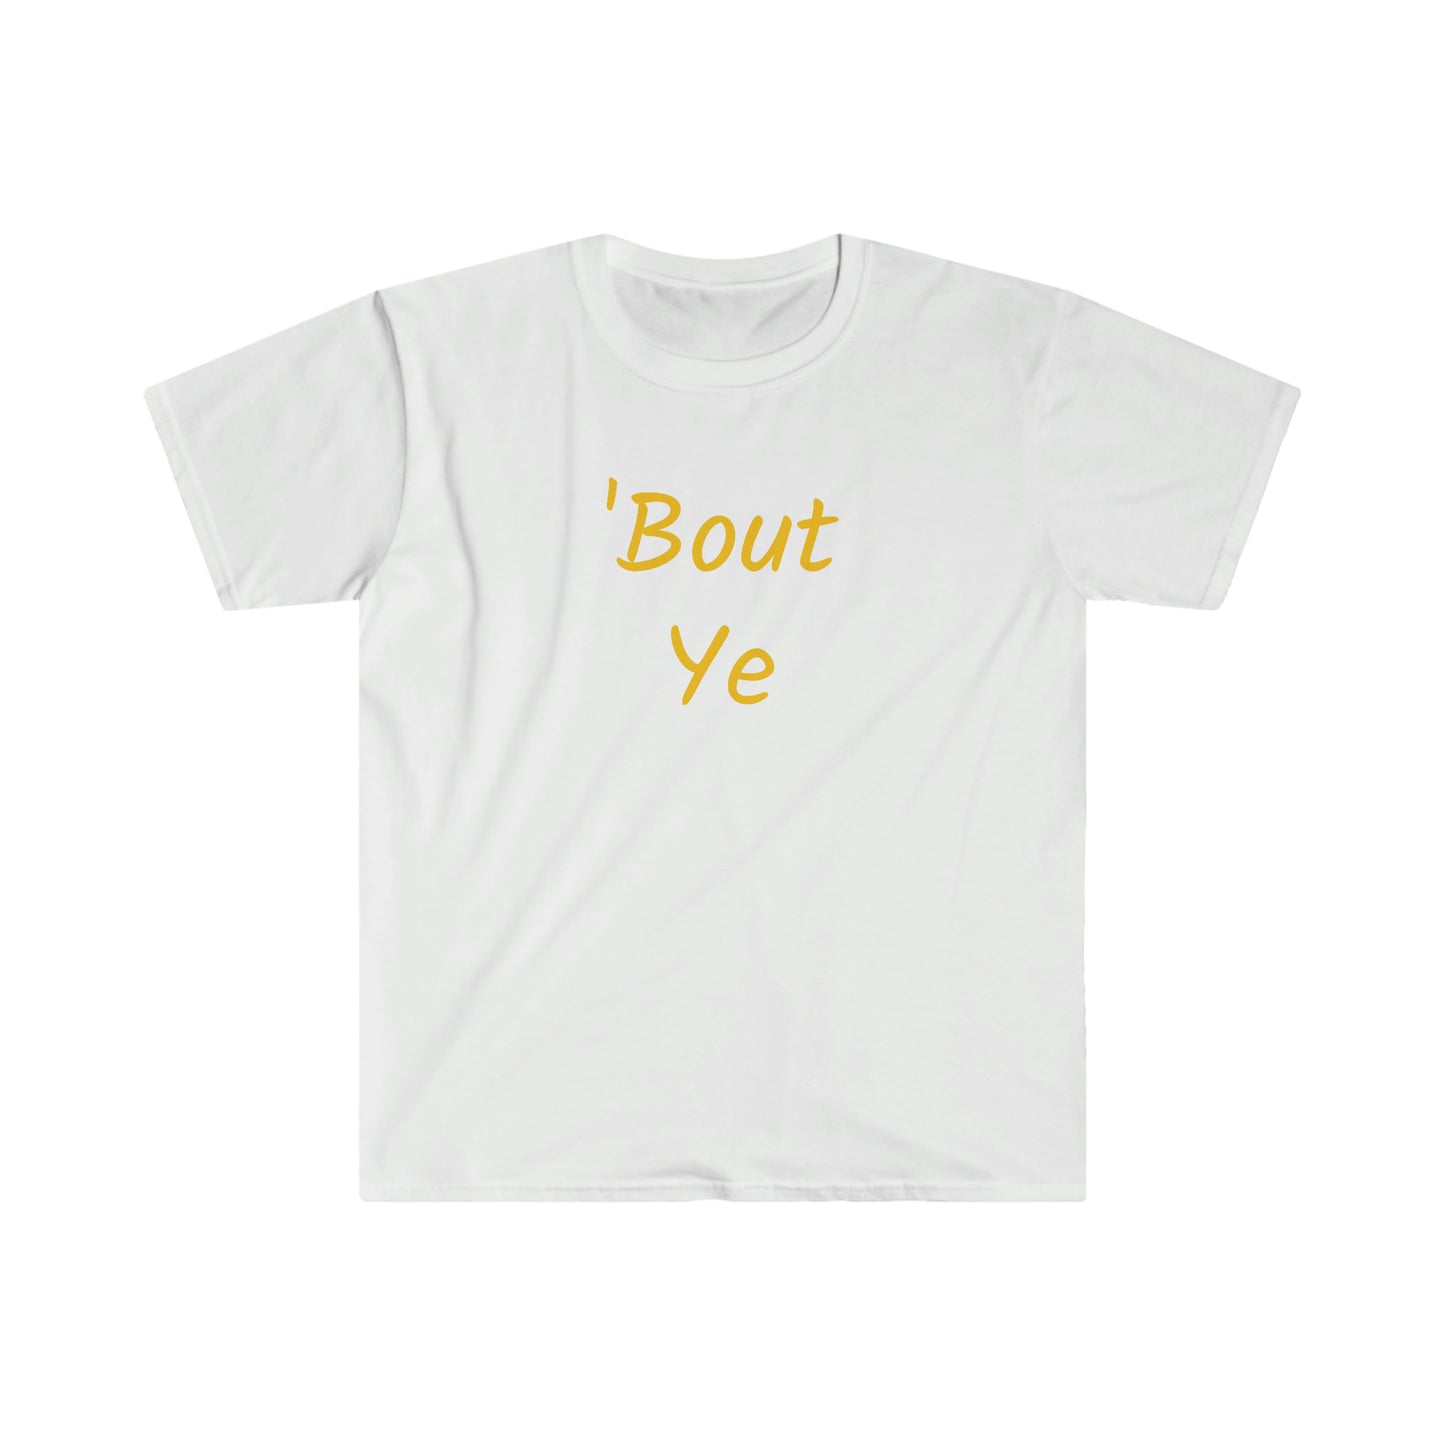 ‘Bout ye T-shirt